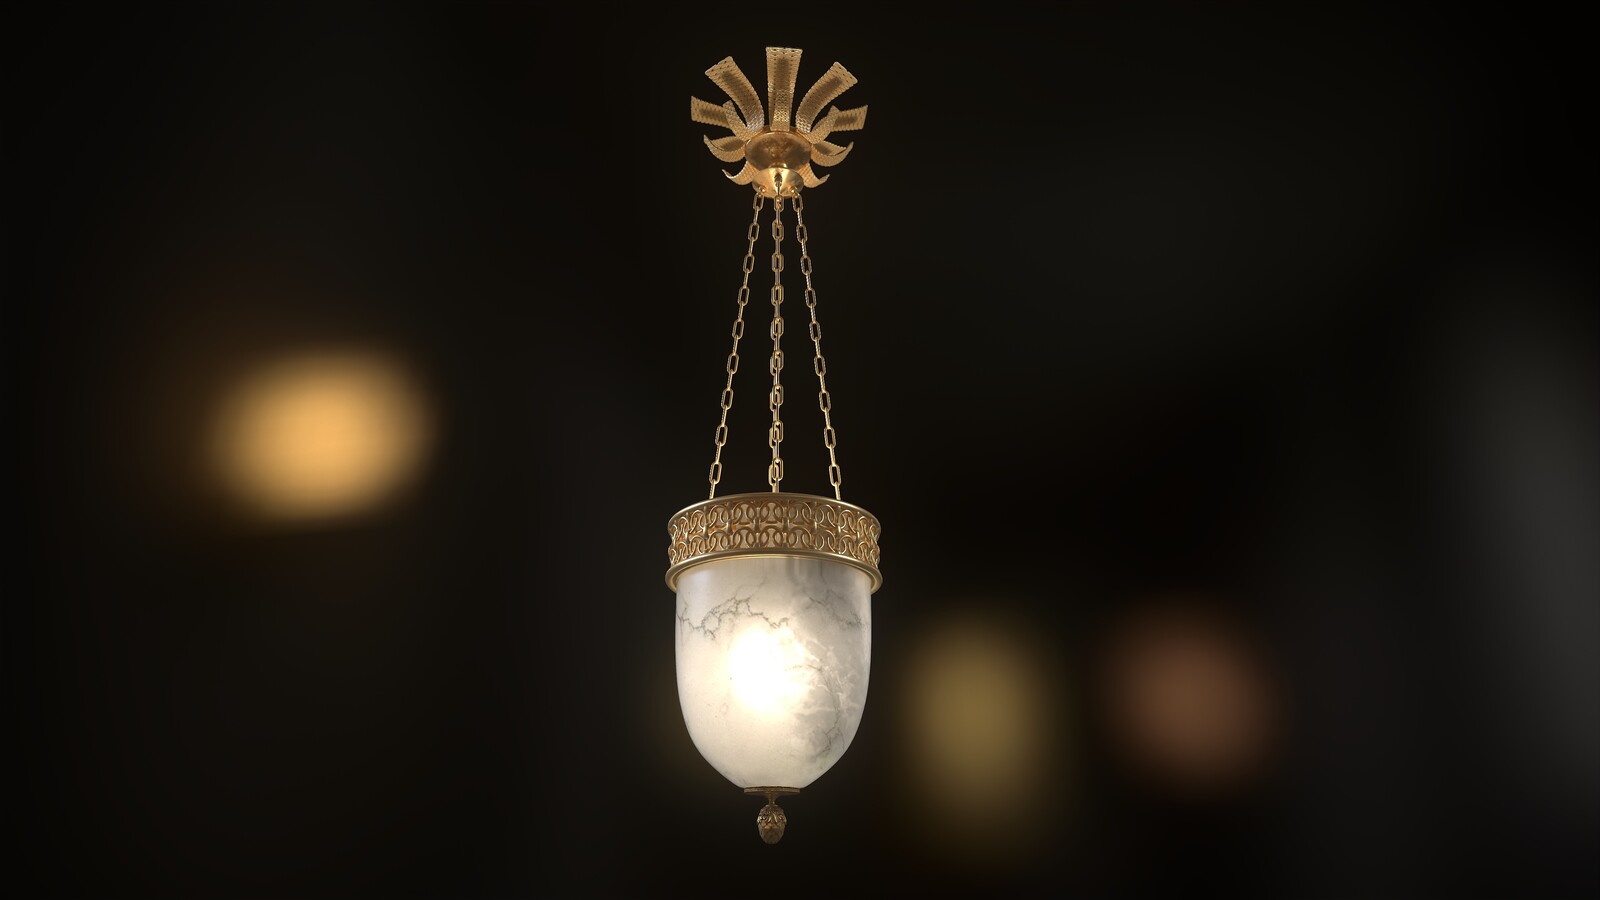 Albaster lighting pendant